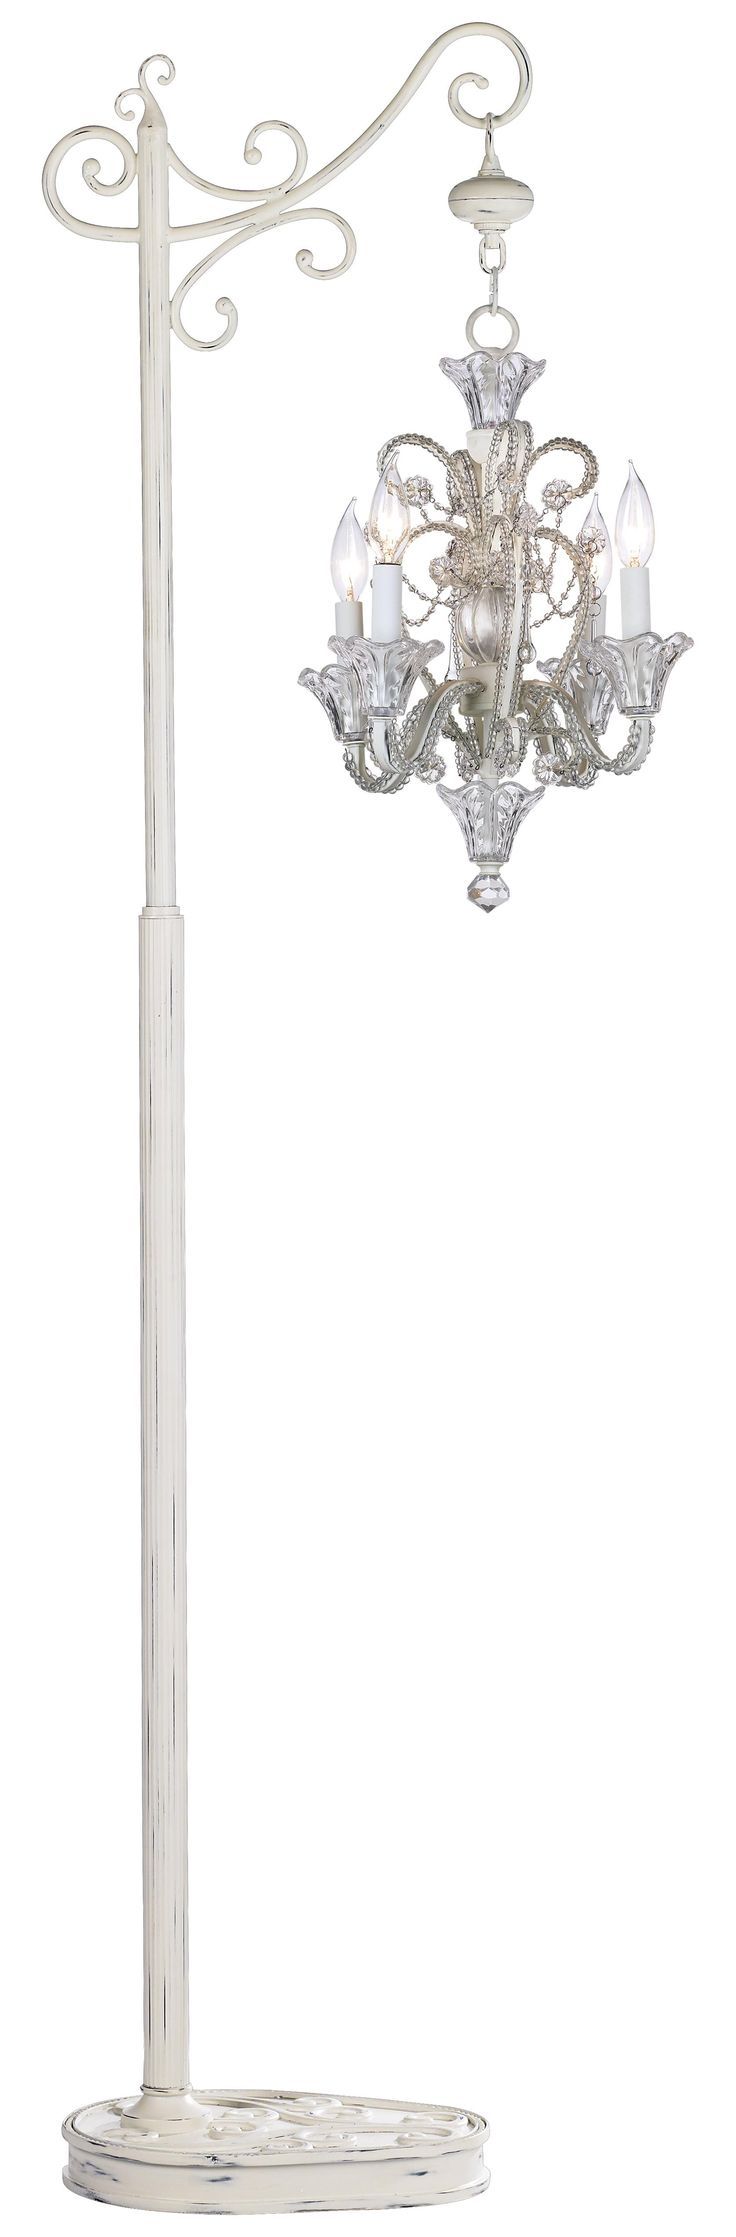 Top 25 Best Chandelier Floor Lamp Ideas On Pinterest Floor Pertaining To Chandelier Standing Lamps (View 5 of 25)